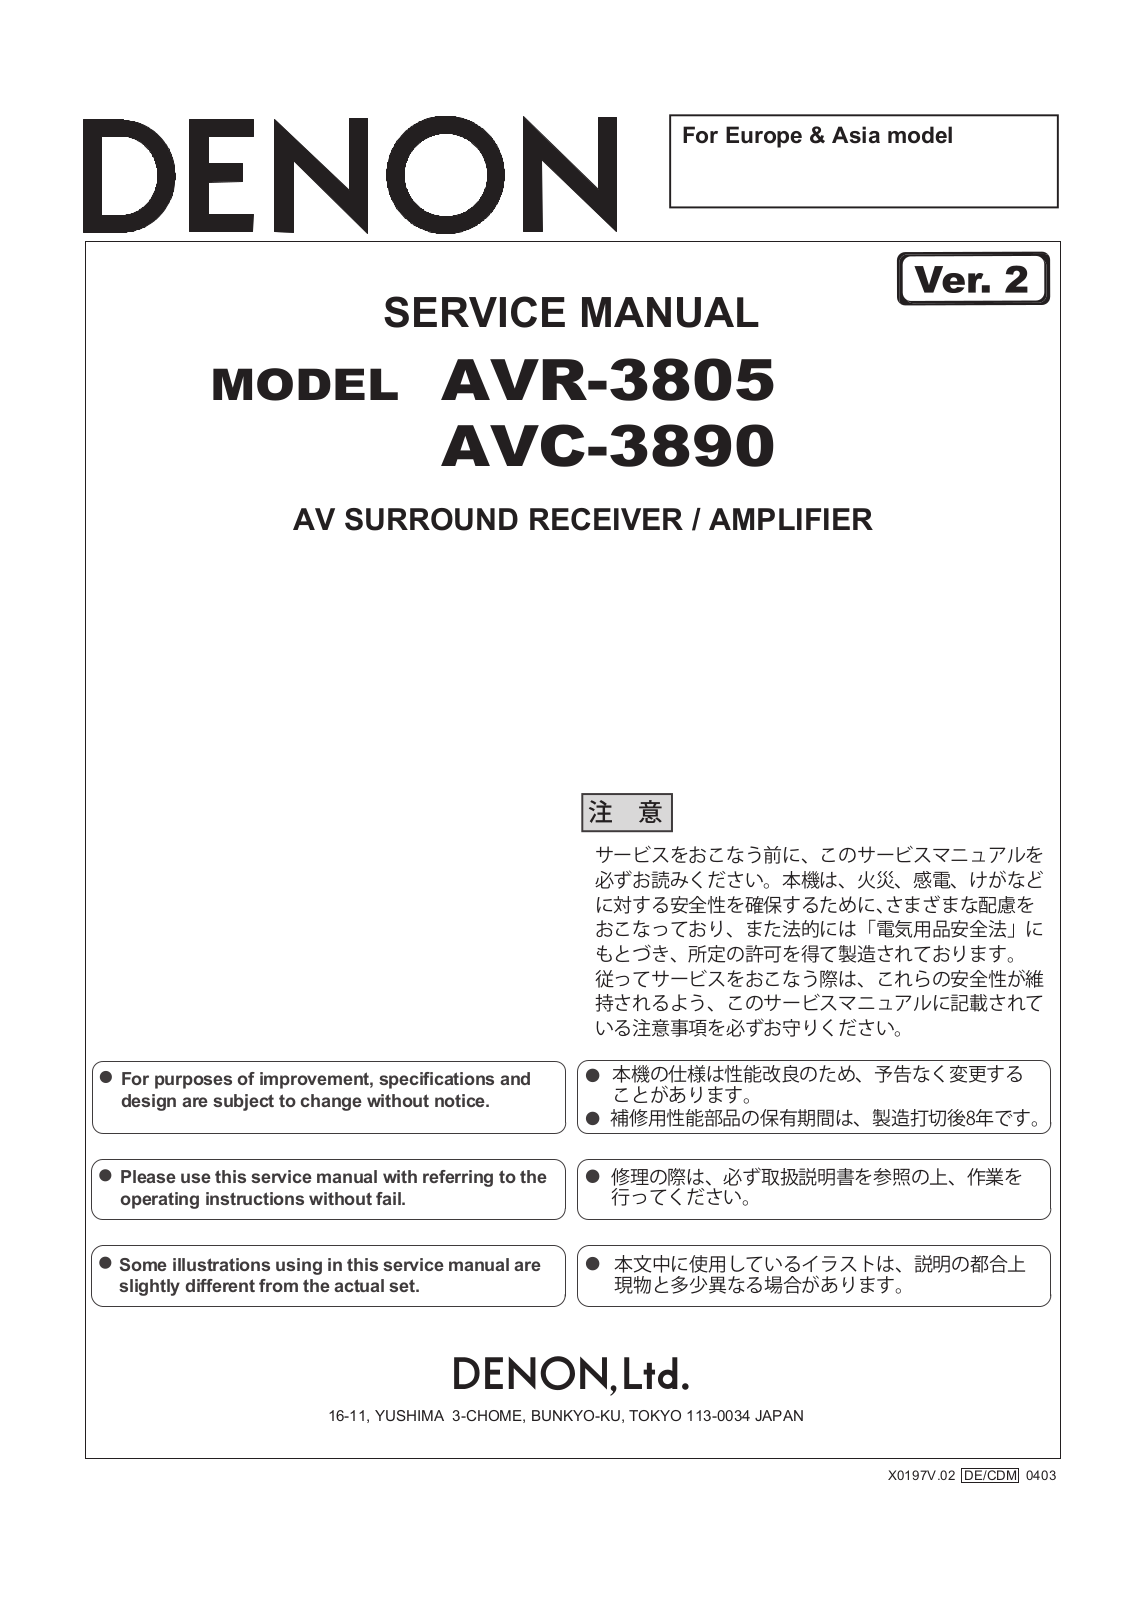 Denon AVR-3805, AVR-3890 Service Manual